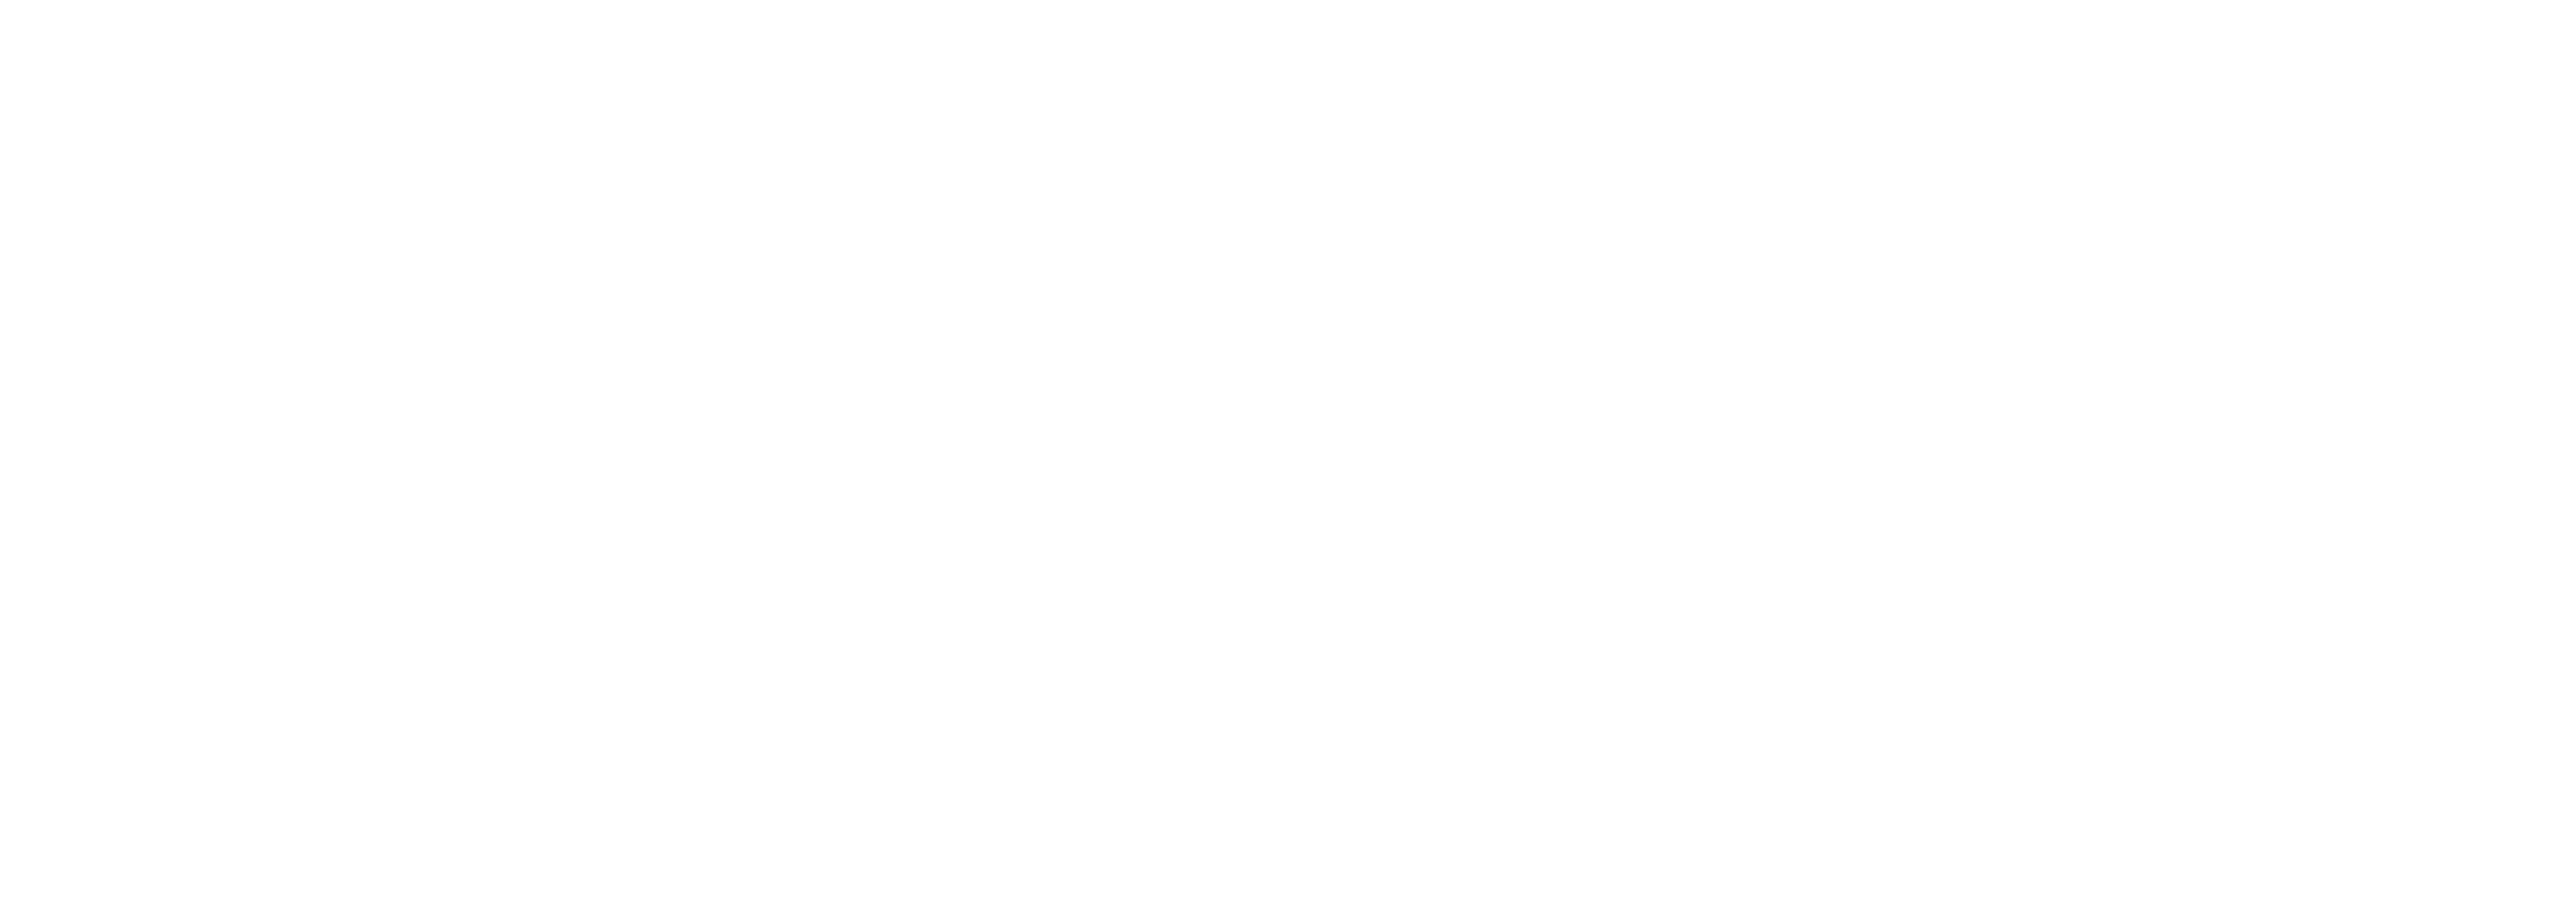 Predif Castilla y León